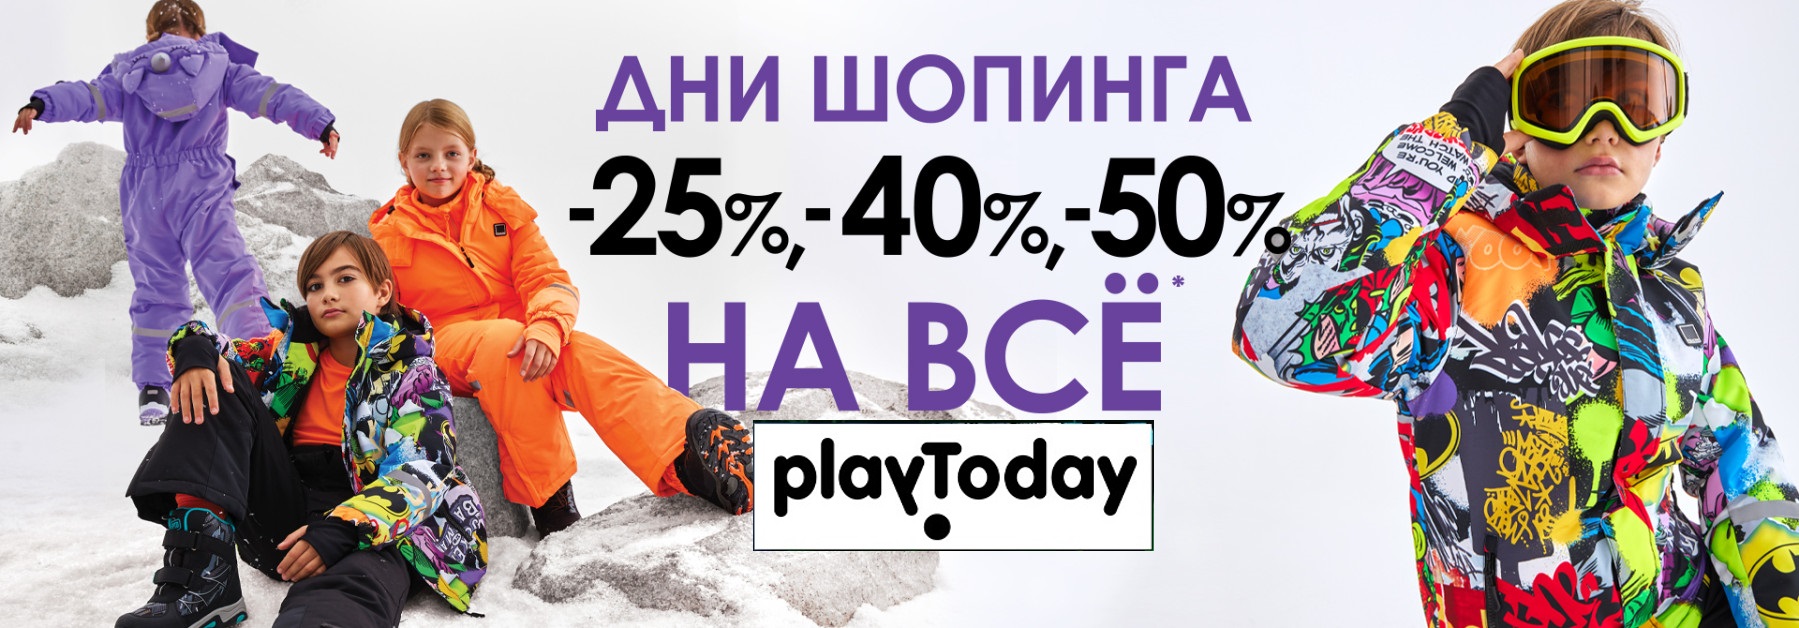 Playtoday!    -50%.   8%.  !  -.   -. 